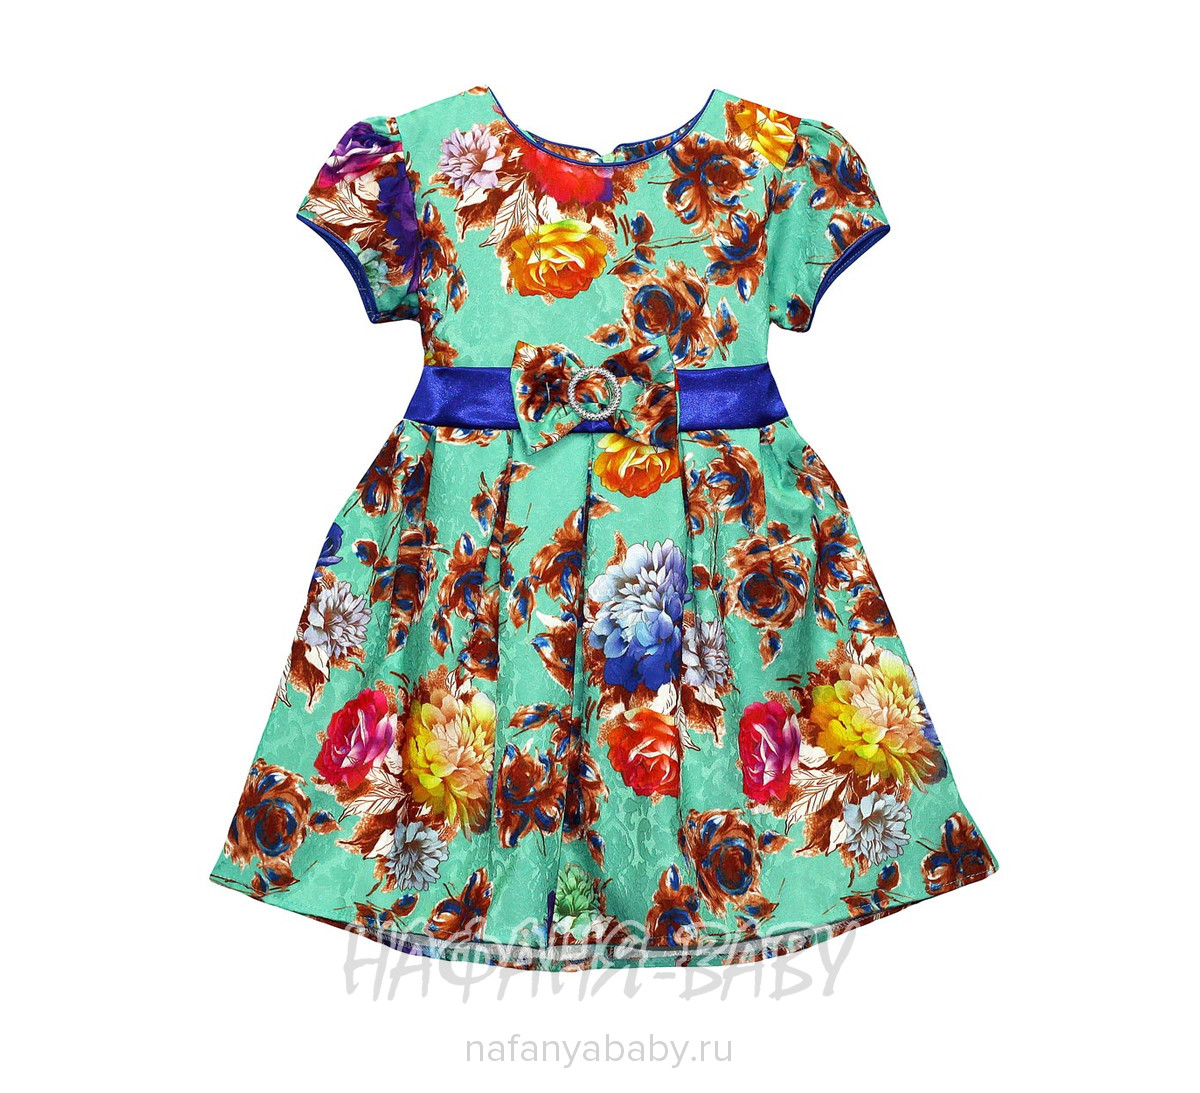 Детское платье KGMART арт: 1134, 1-4 года, 5-9 лет, оптом 